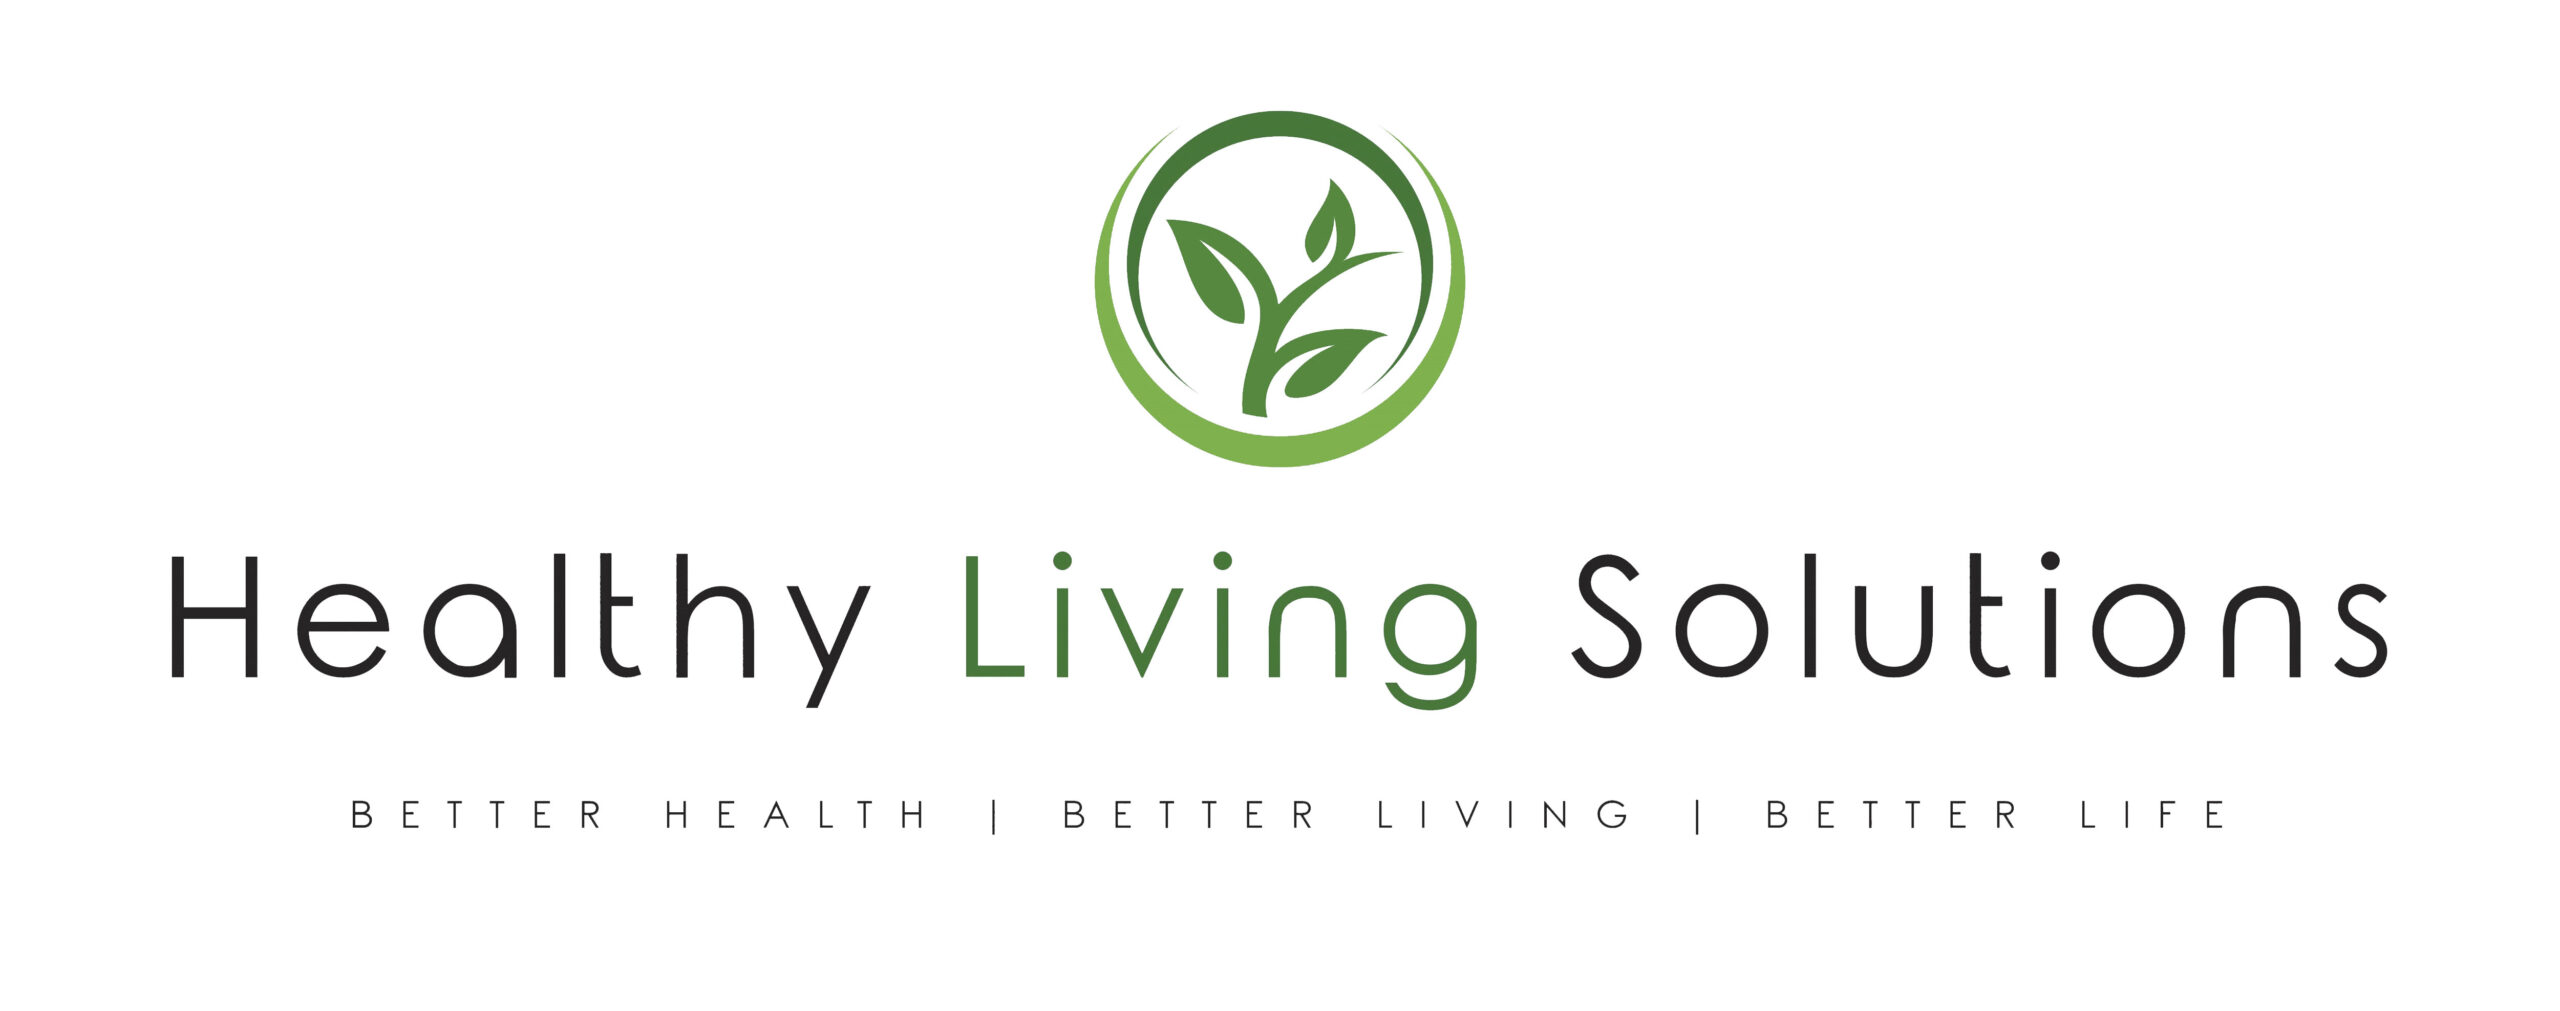 Logo Design & Branding for Healthy Living Solutions